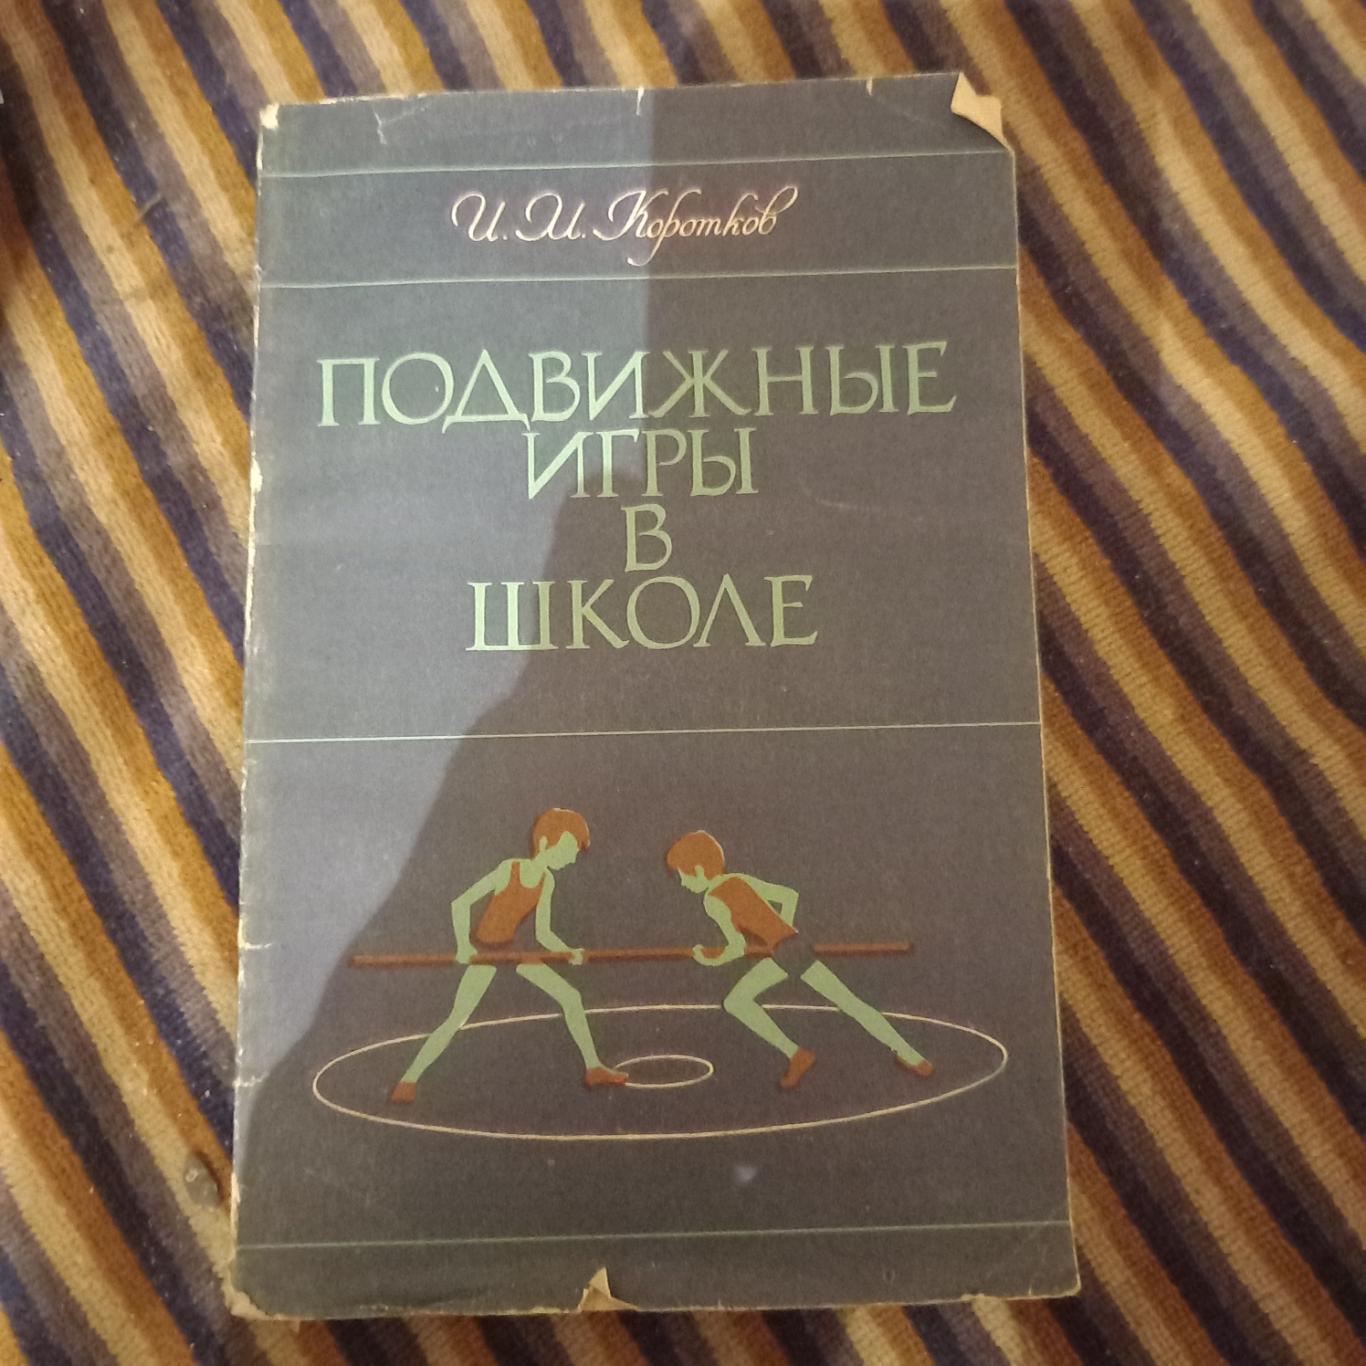 Подвижные игры в школе И.М.Коротков 1979